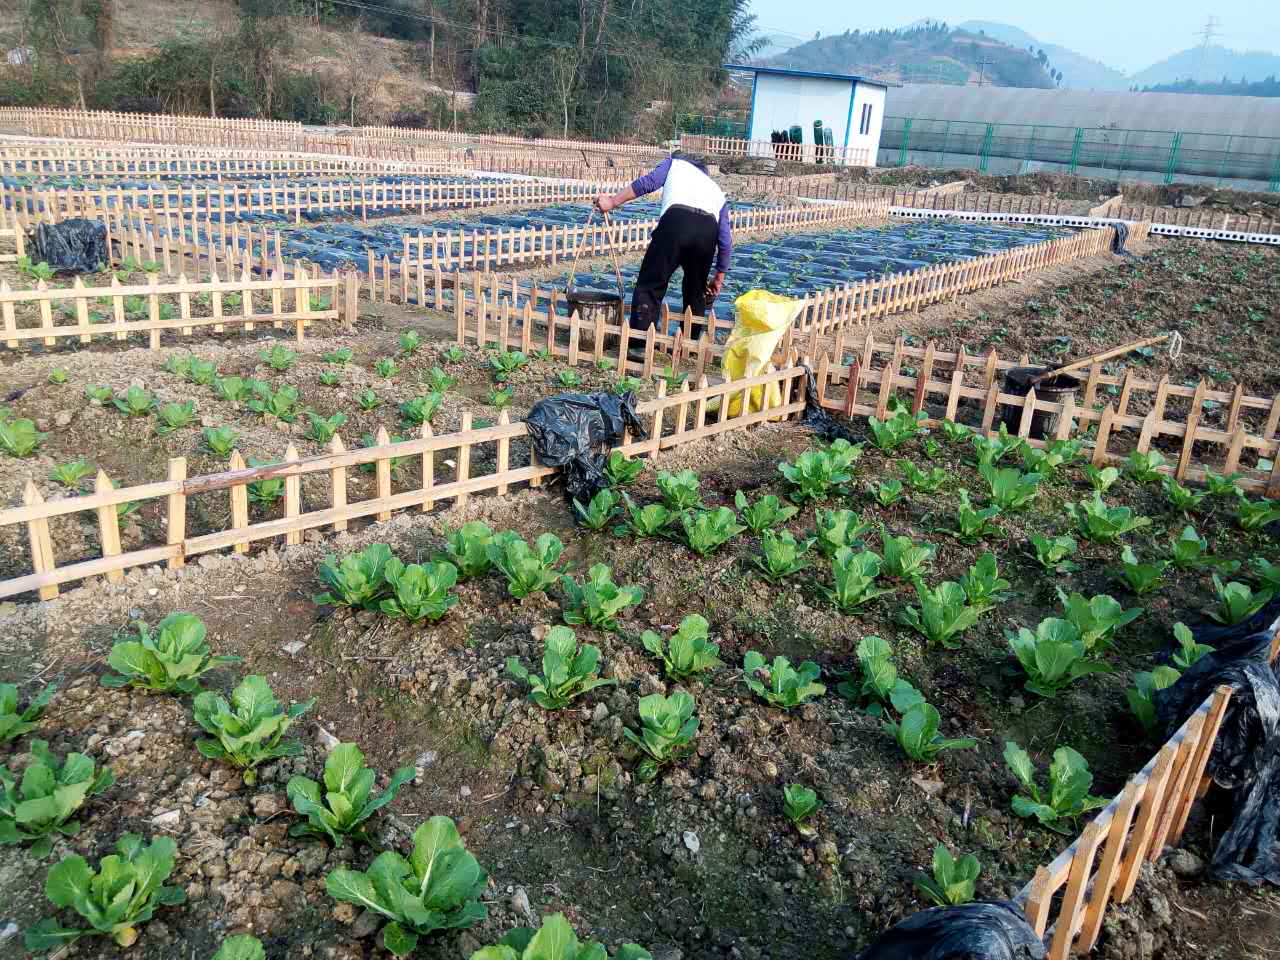 农场位于贵州遵义周边,占地80余亩,是集私人土地租凭,有机种植,特色